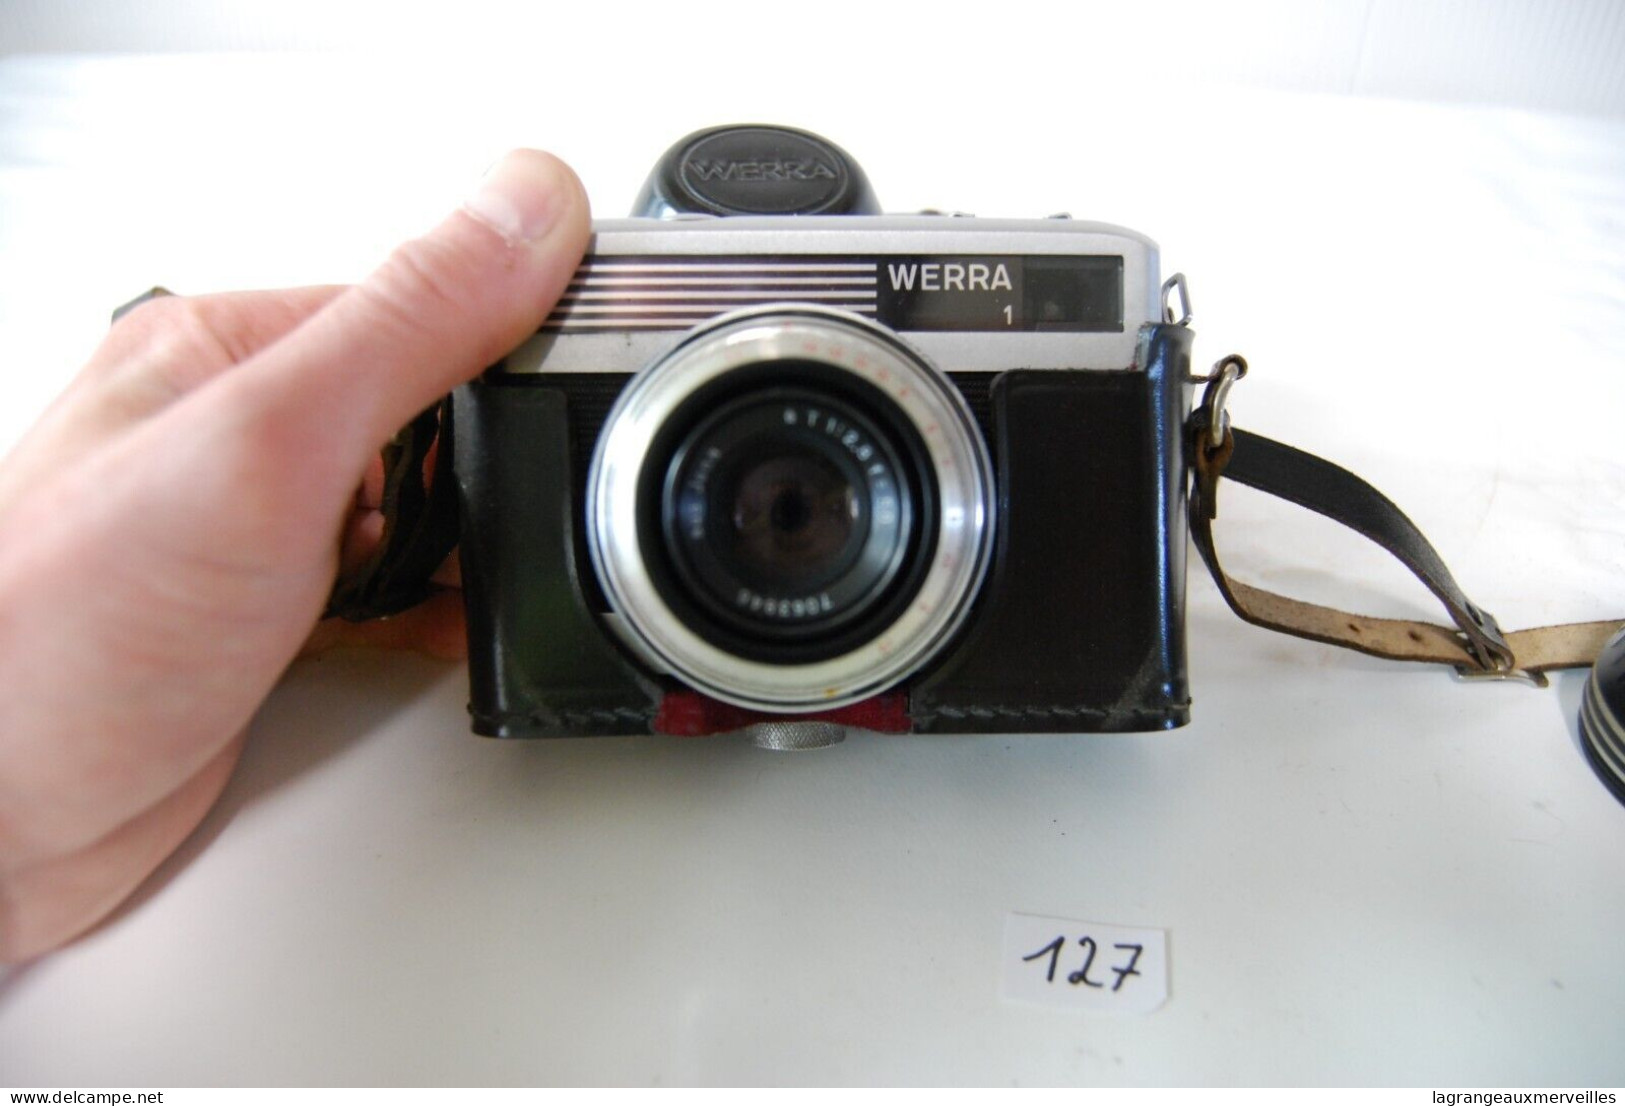 C127 Ancien appareil photo - Werra 1 - rare modèle vintage